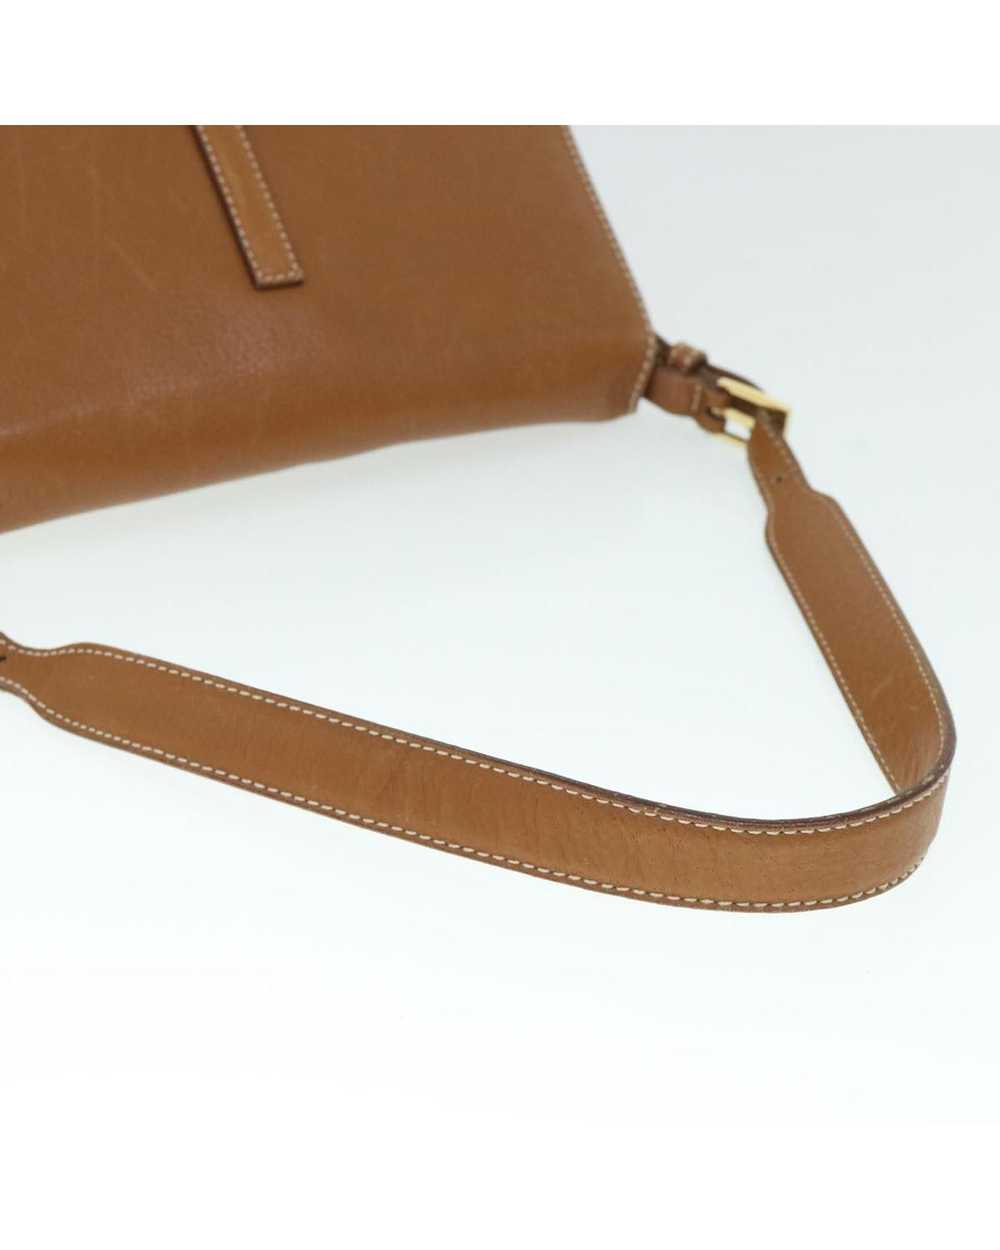 Salvatore Ferragamo Elegant Brown Leather Bag - image 7